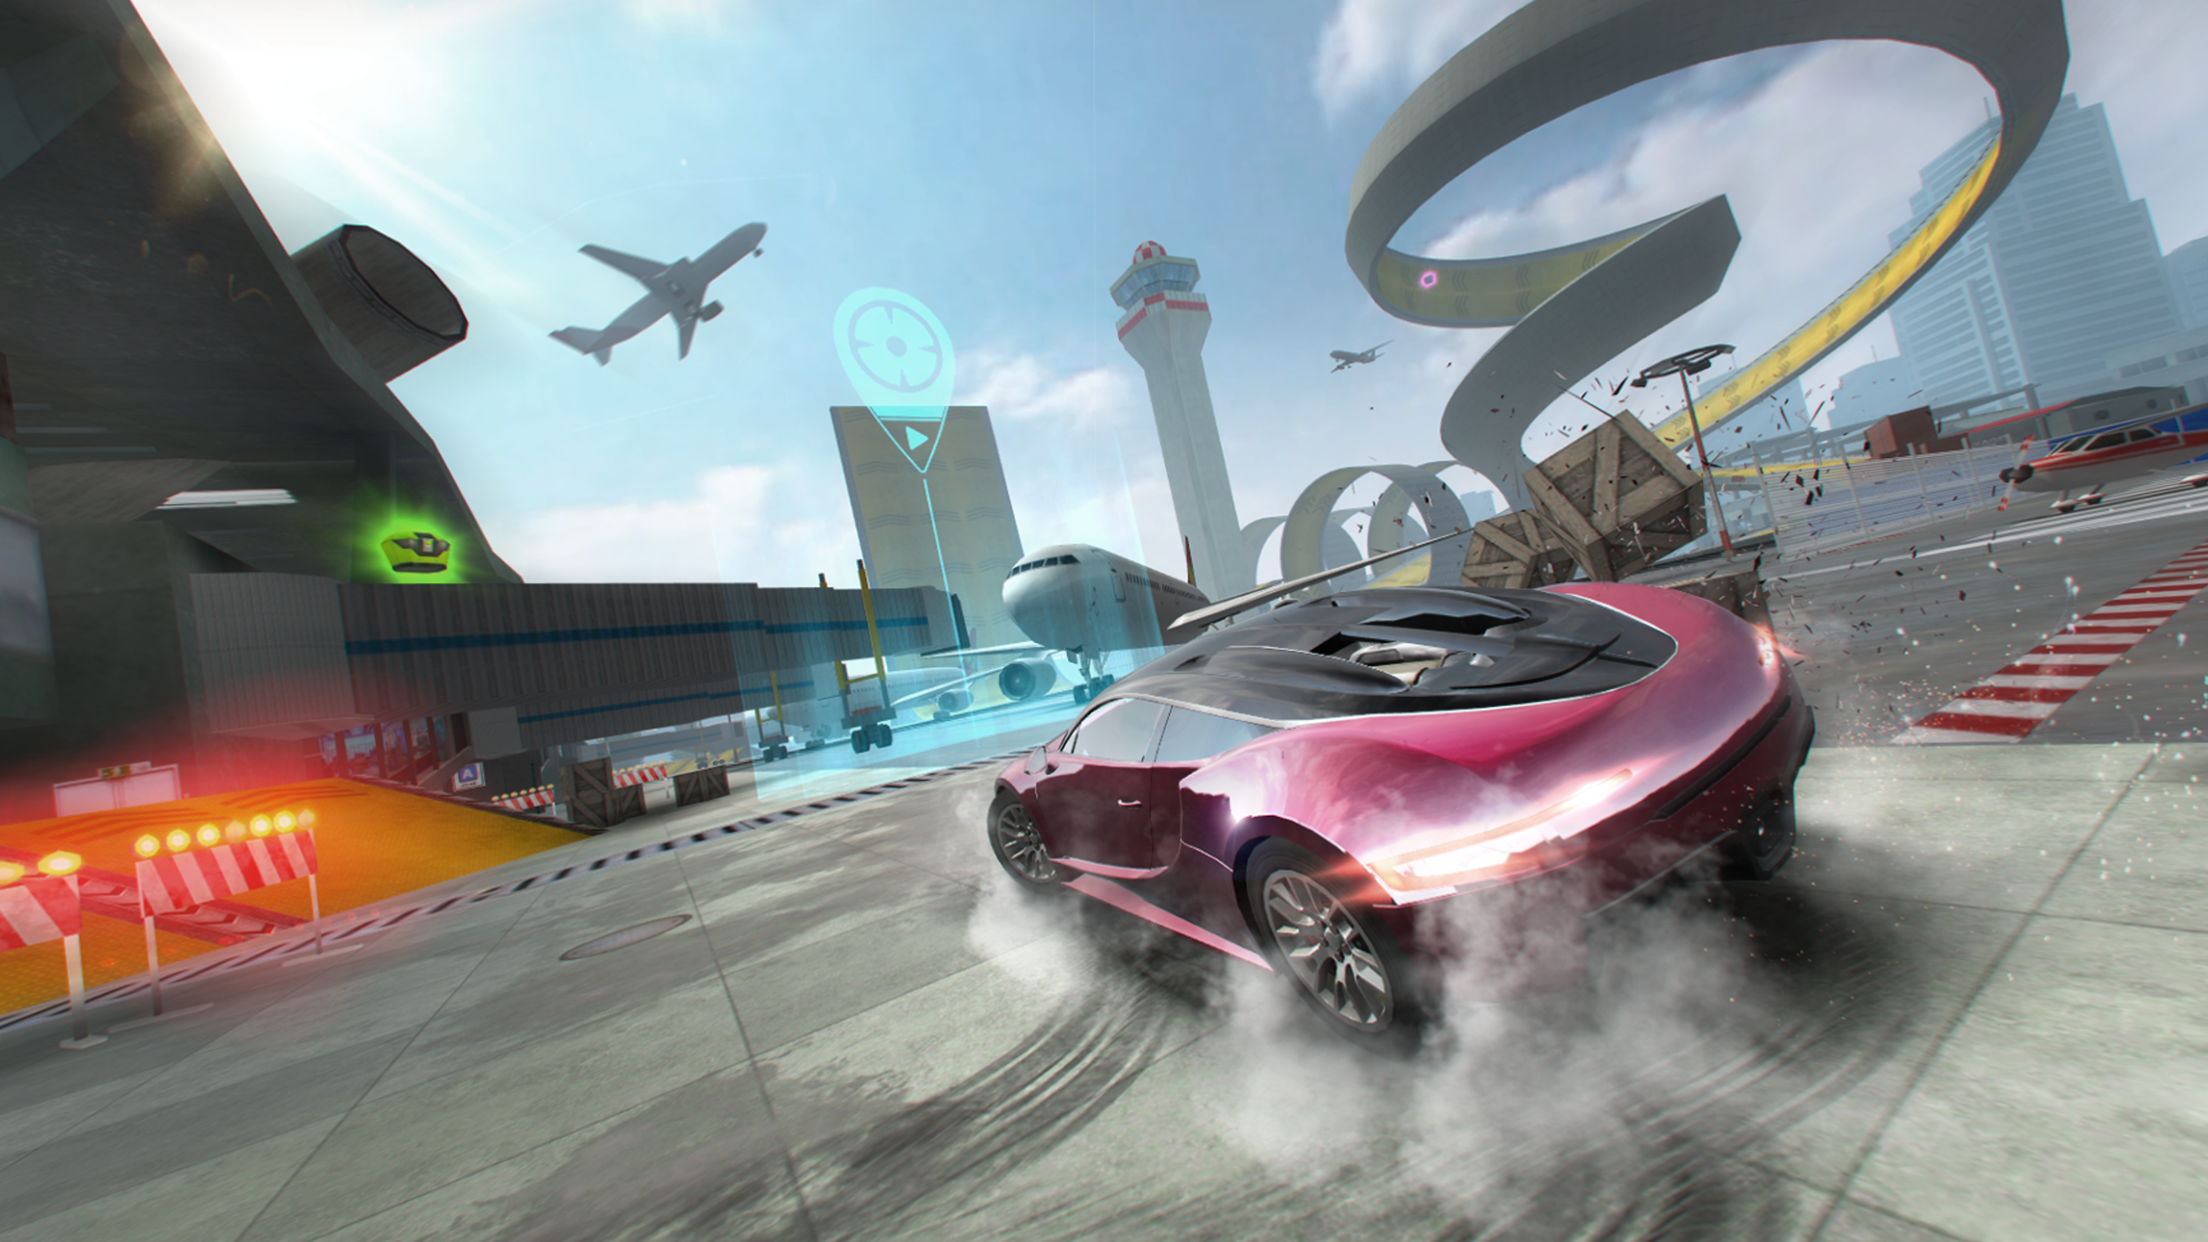 Screenshot 1 of ประสบการณ์การขับขี่รถจริง - เกมแข่งรถ 1.4.2